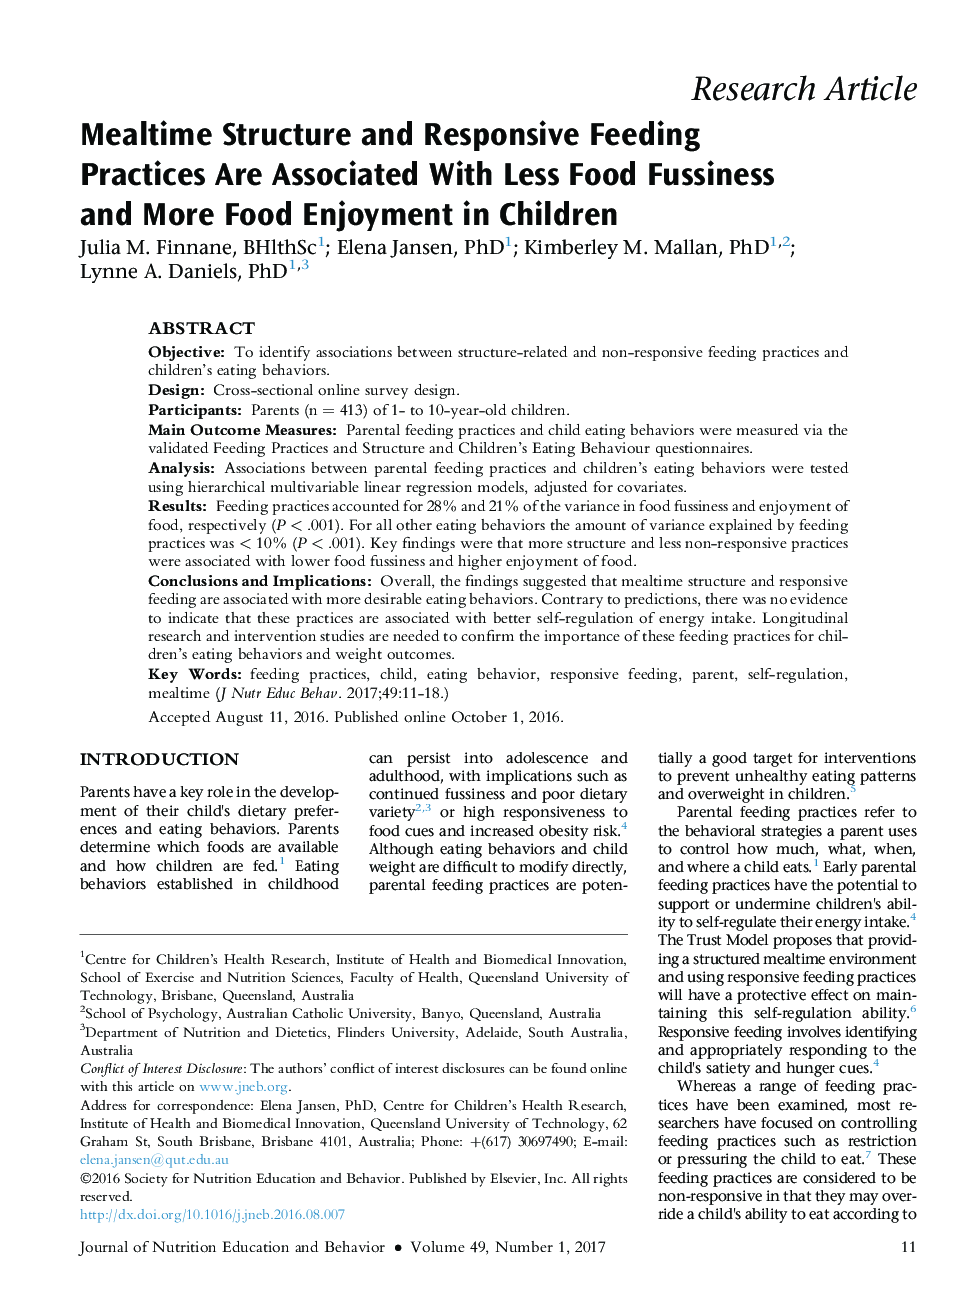 ساختار غذا و تغذیه پاسخگو همراه با کمبود غذا و لذت بیشتر غذا در کودکان 